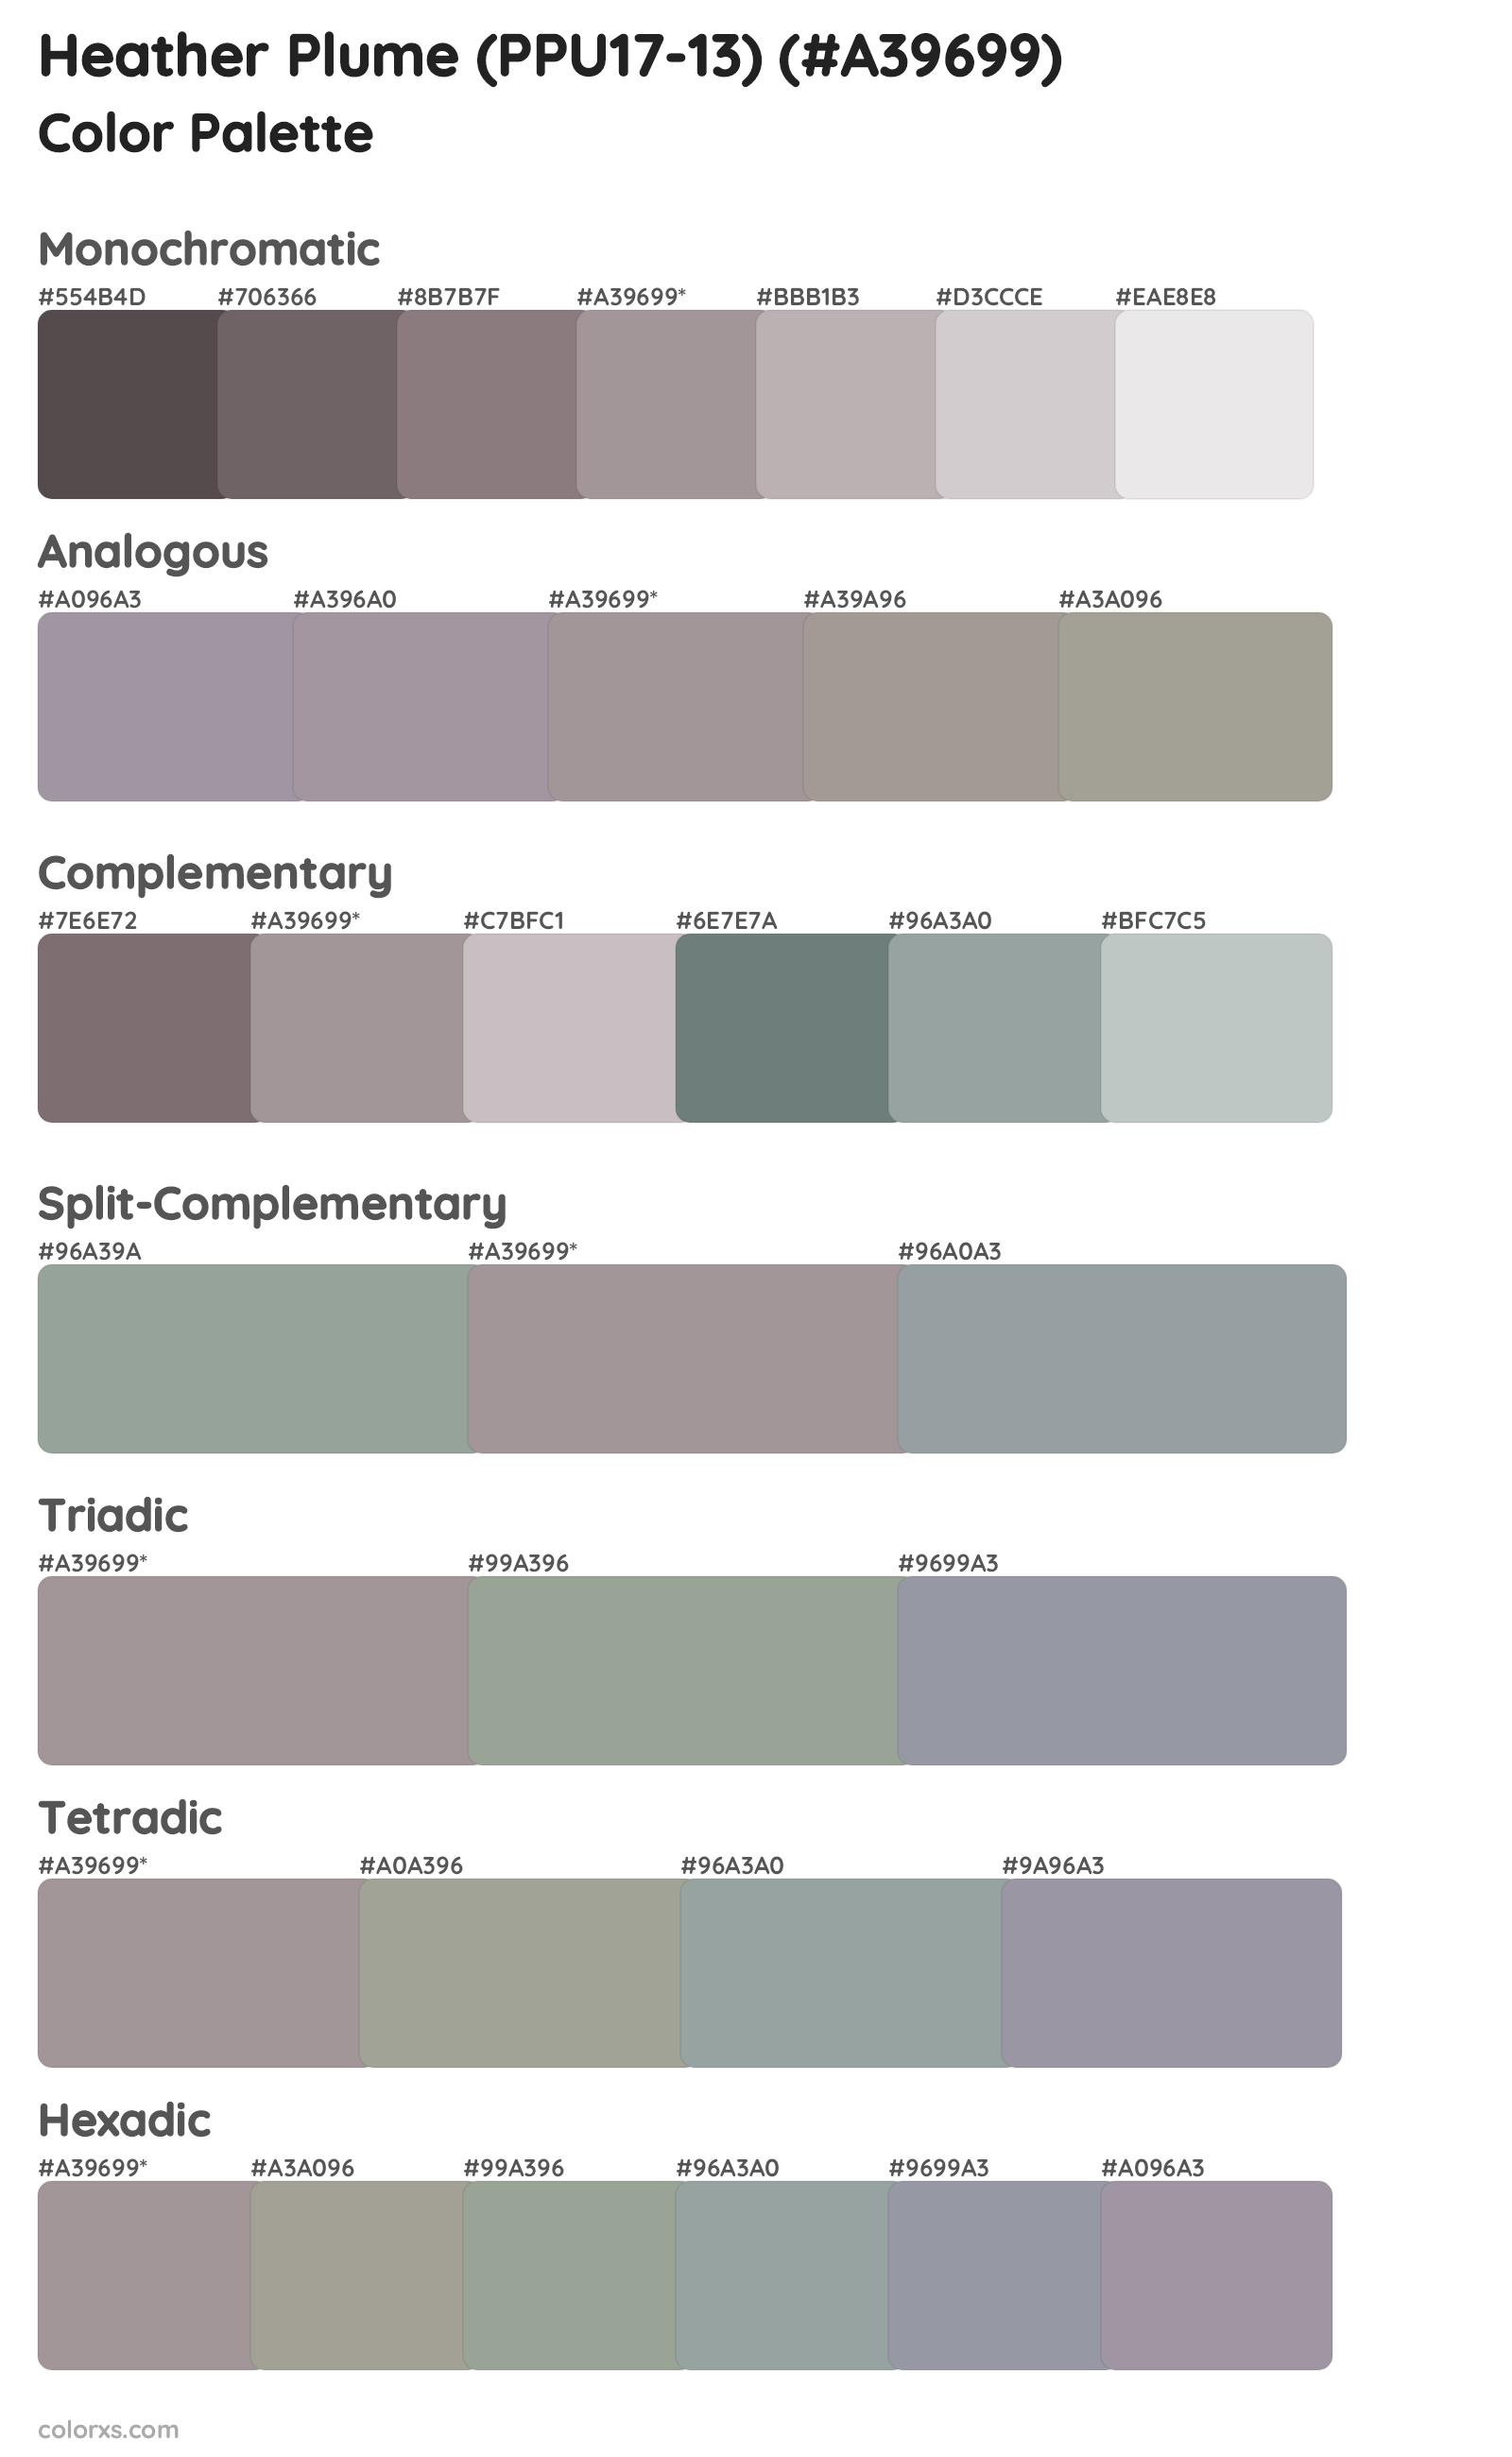 Heather Plume (PPU17-13) Color Scheme Palettes